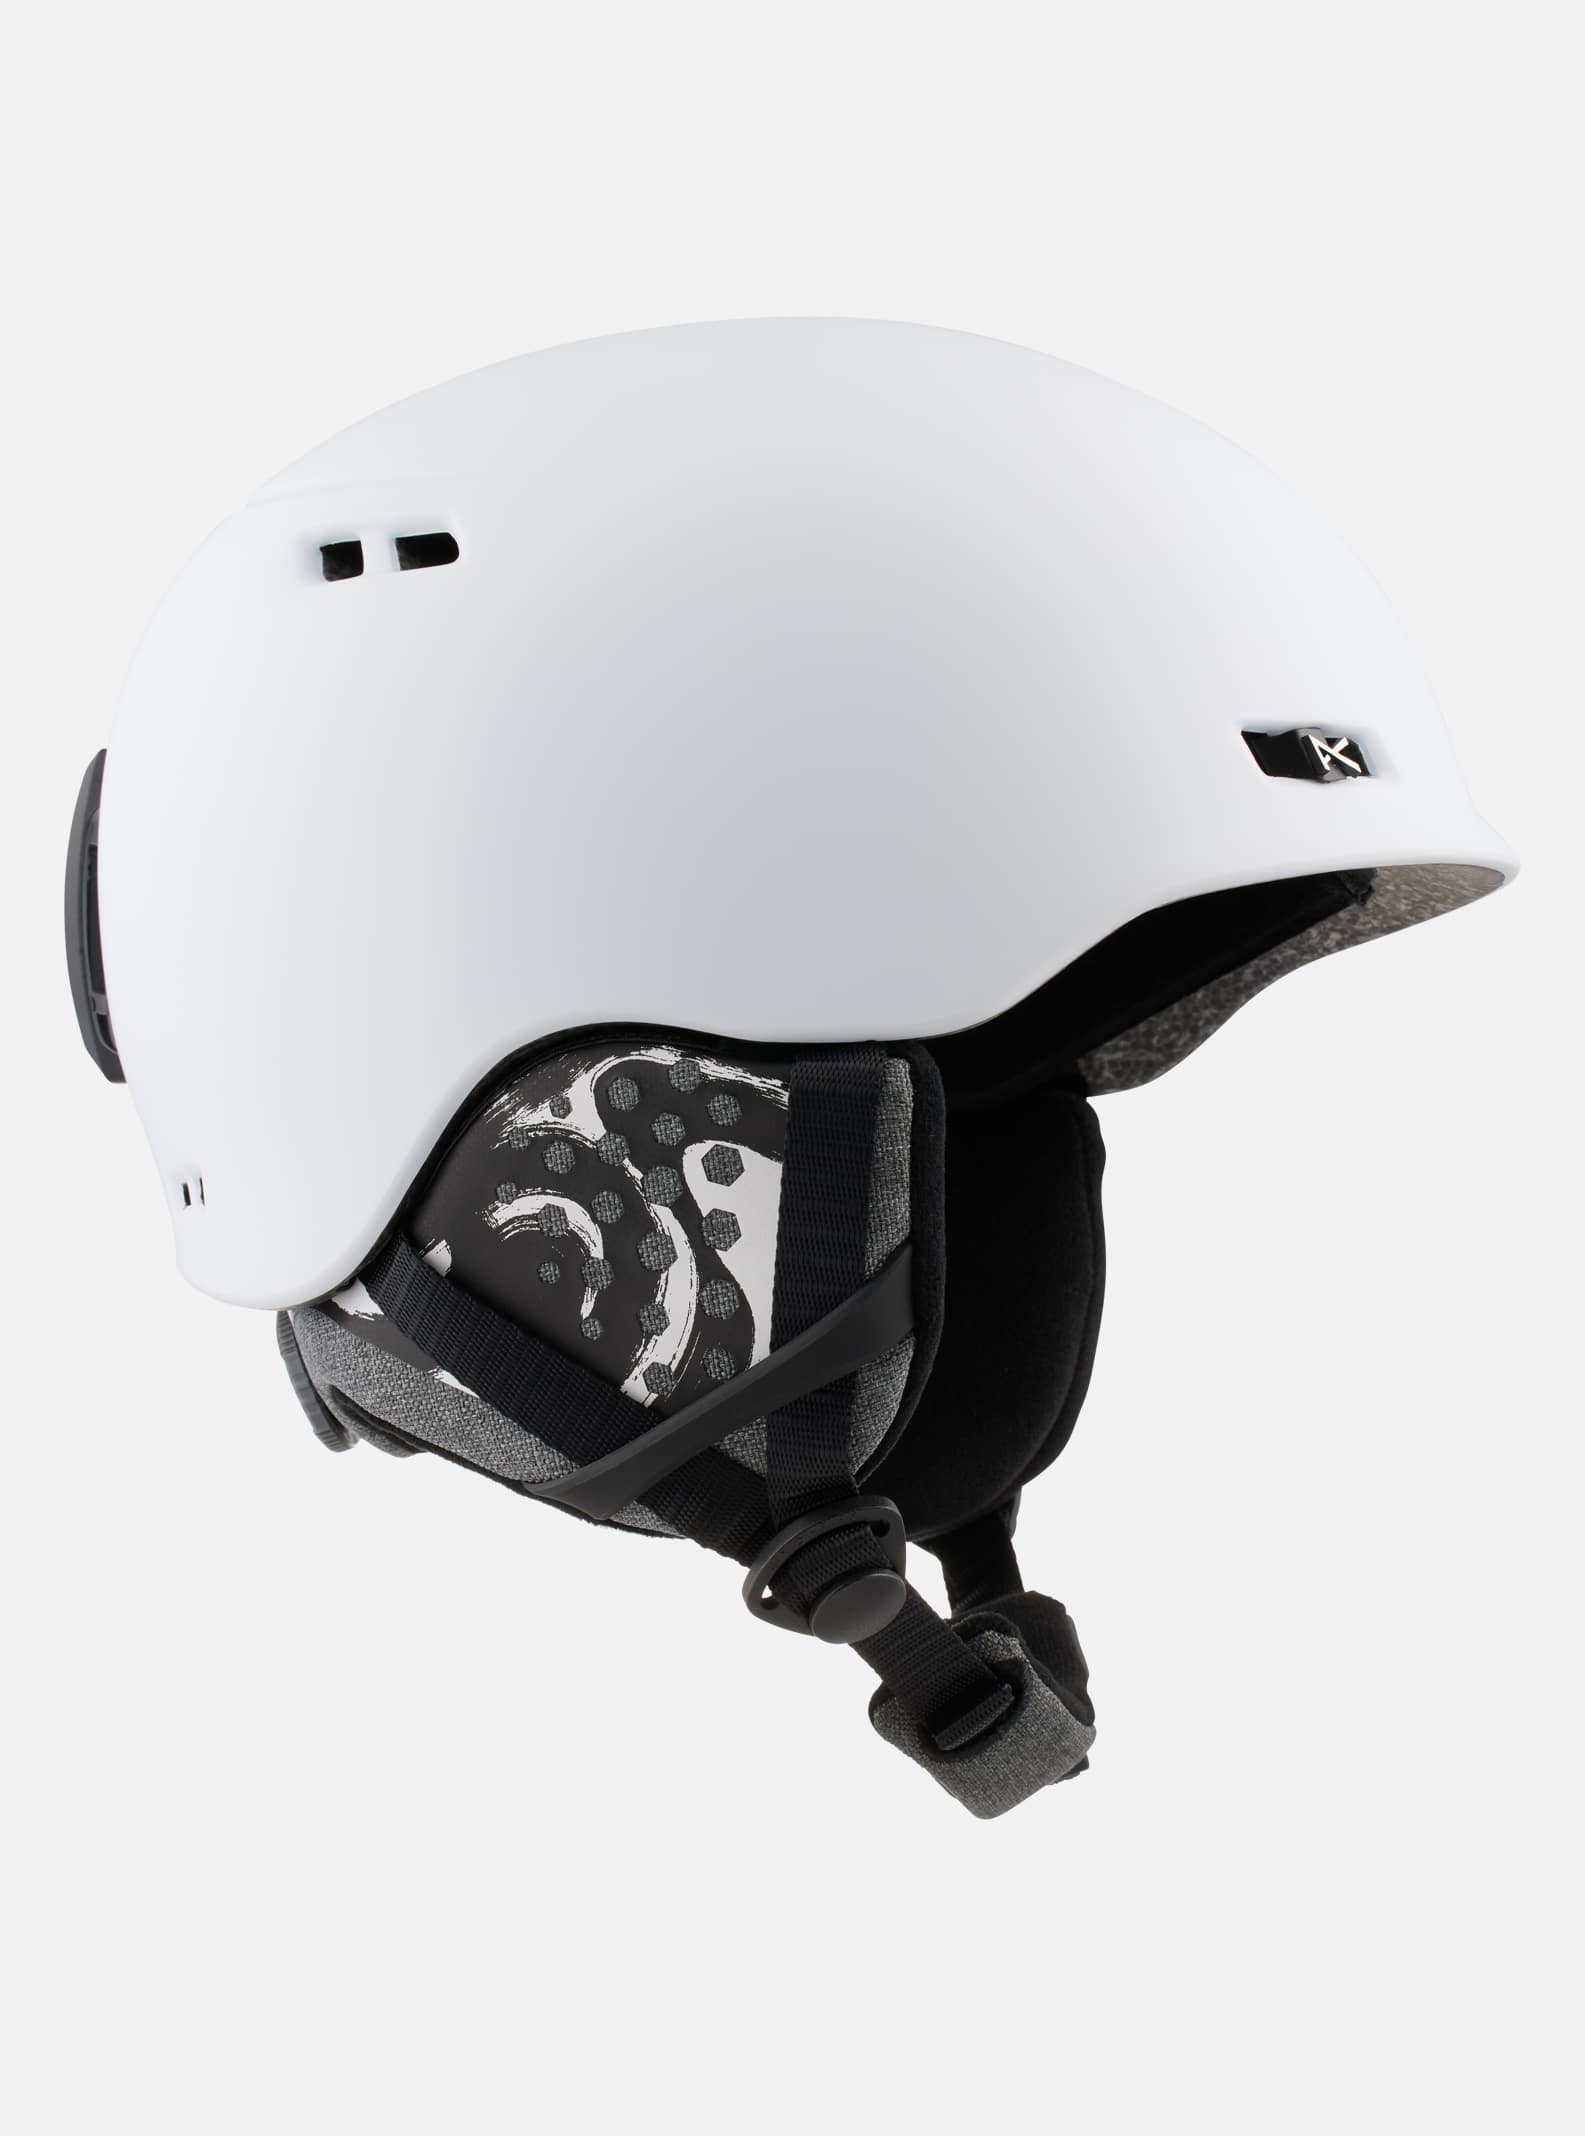 Men's Helmets | Ski Snowboard Helmets for Women | Optics